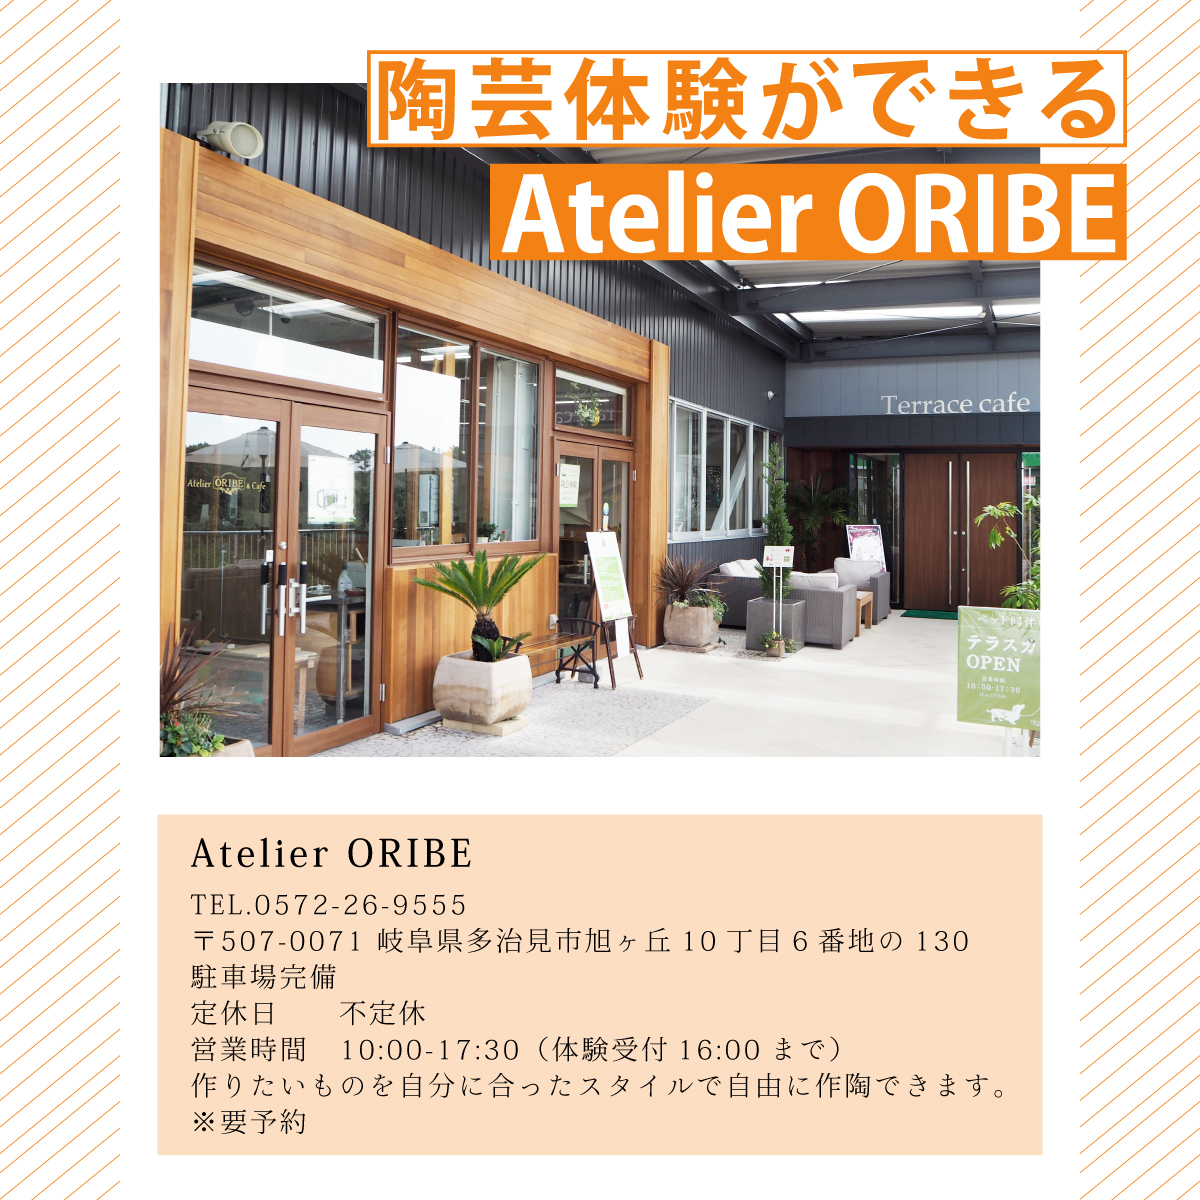 Atelier ORIBEでは自由に作陶が楽しめます